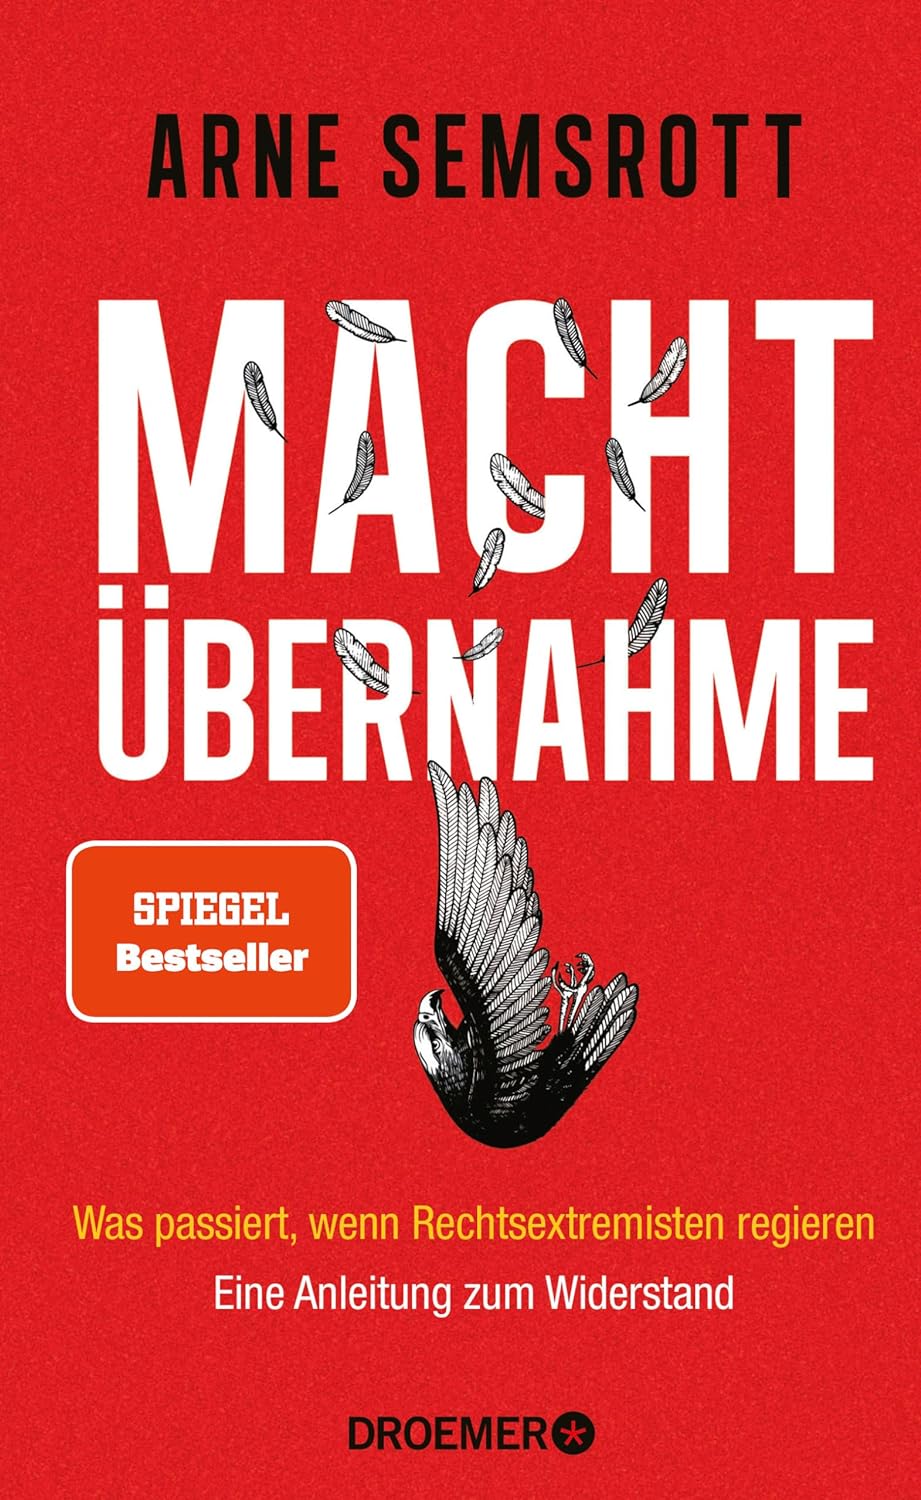 Arne Semsrott: Machtübernahme (Hardcover, Deutsch language, Droemer/Knaur)